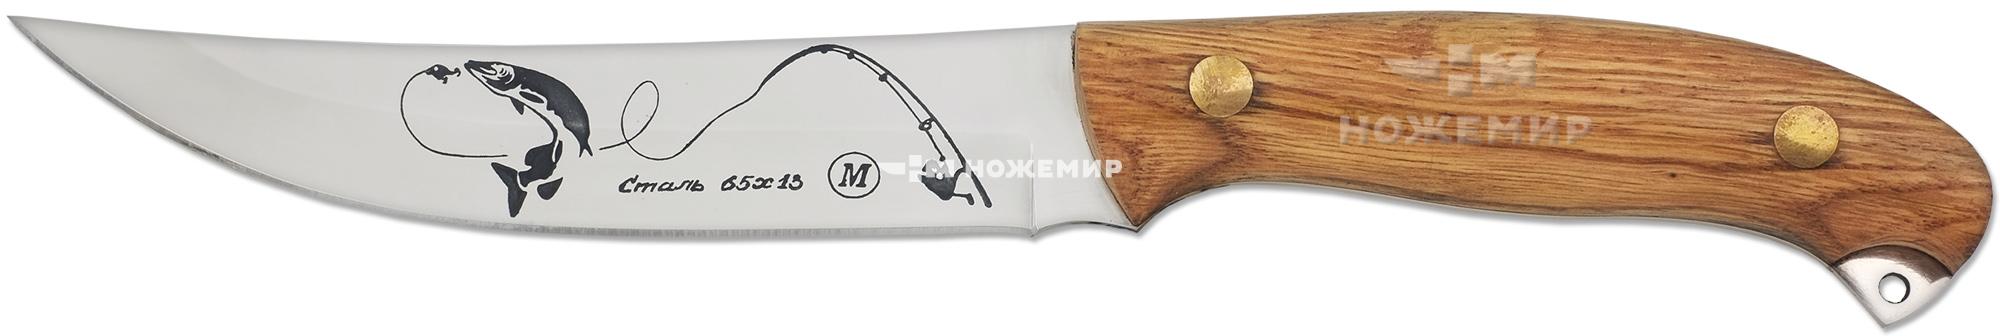 Нож нескладной цельнометаллический Кизляр ЩУКА1-ЦМ (9097) с кожаными ножнами